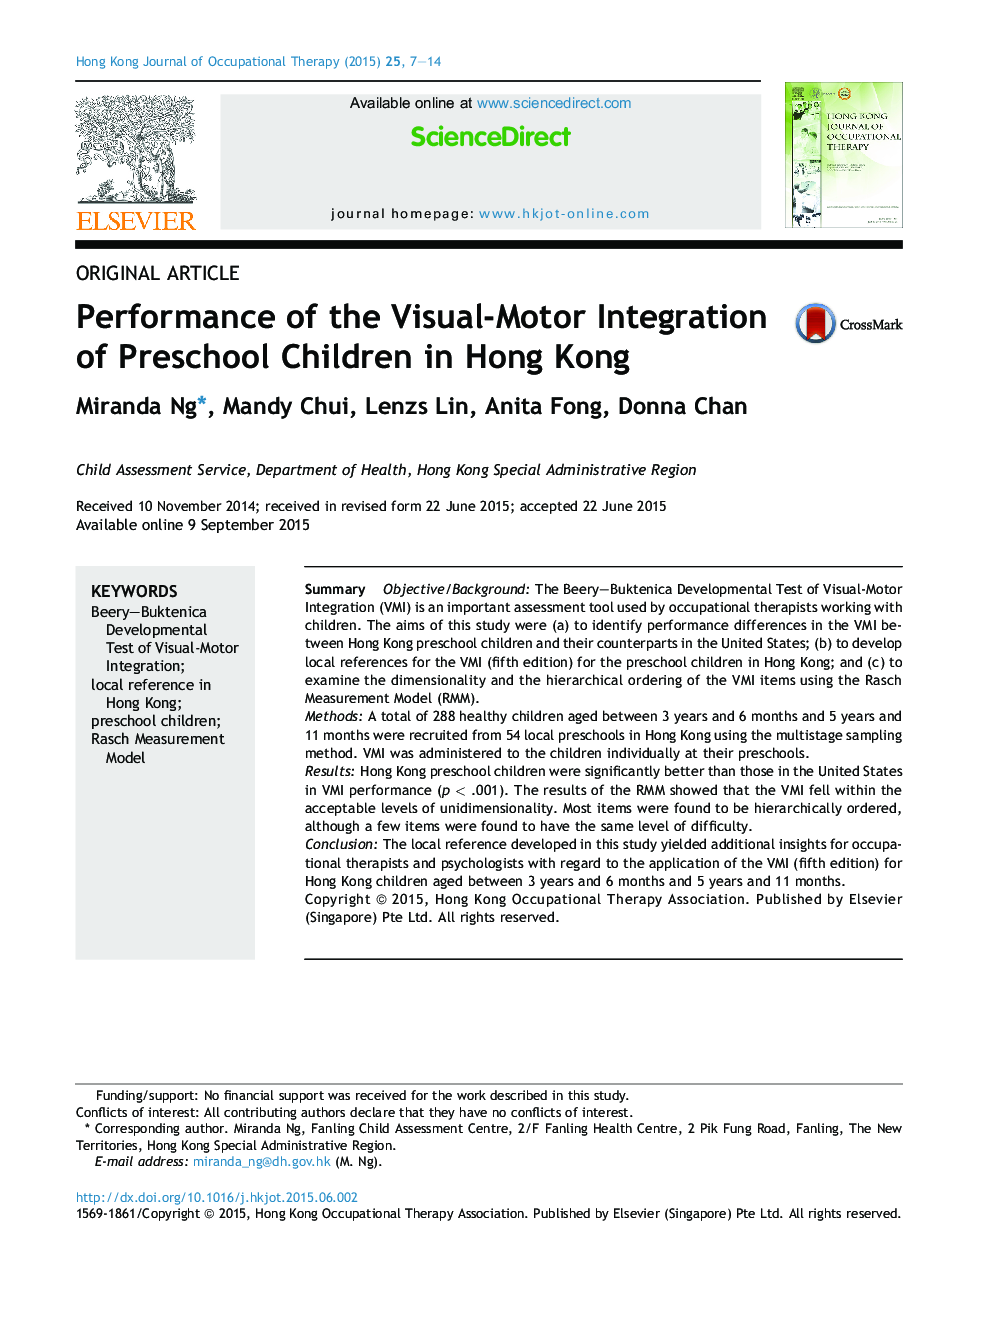 عملکرد ادغام بصری -حرکتی کودکان پیش دبستانی در هنگ کنگ